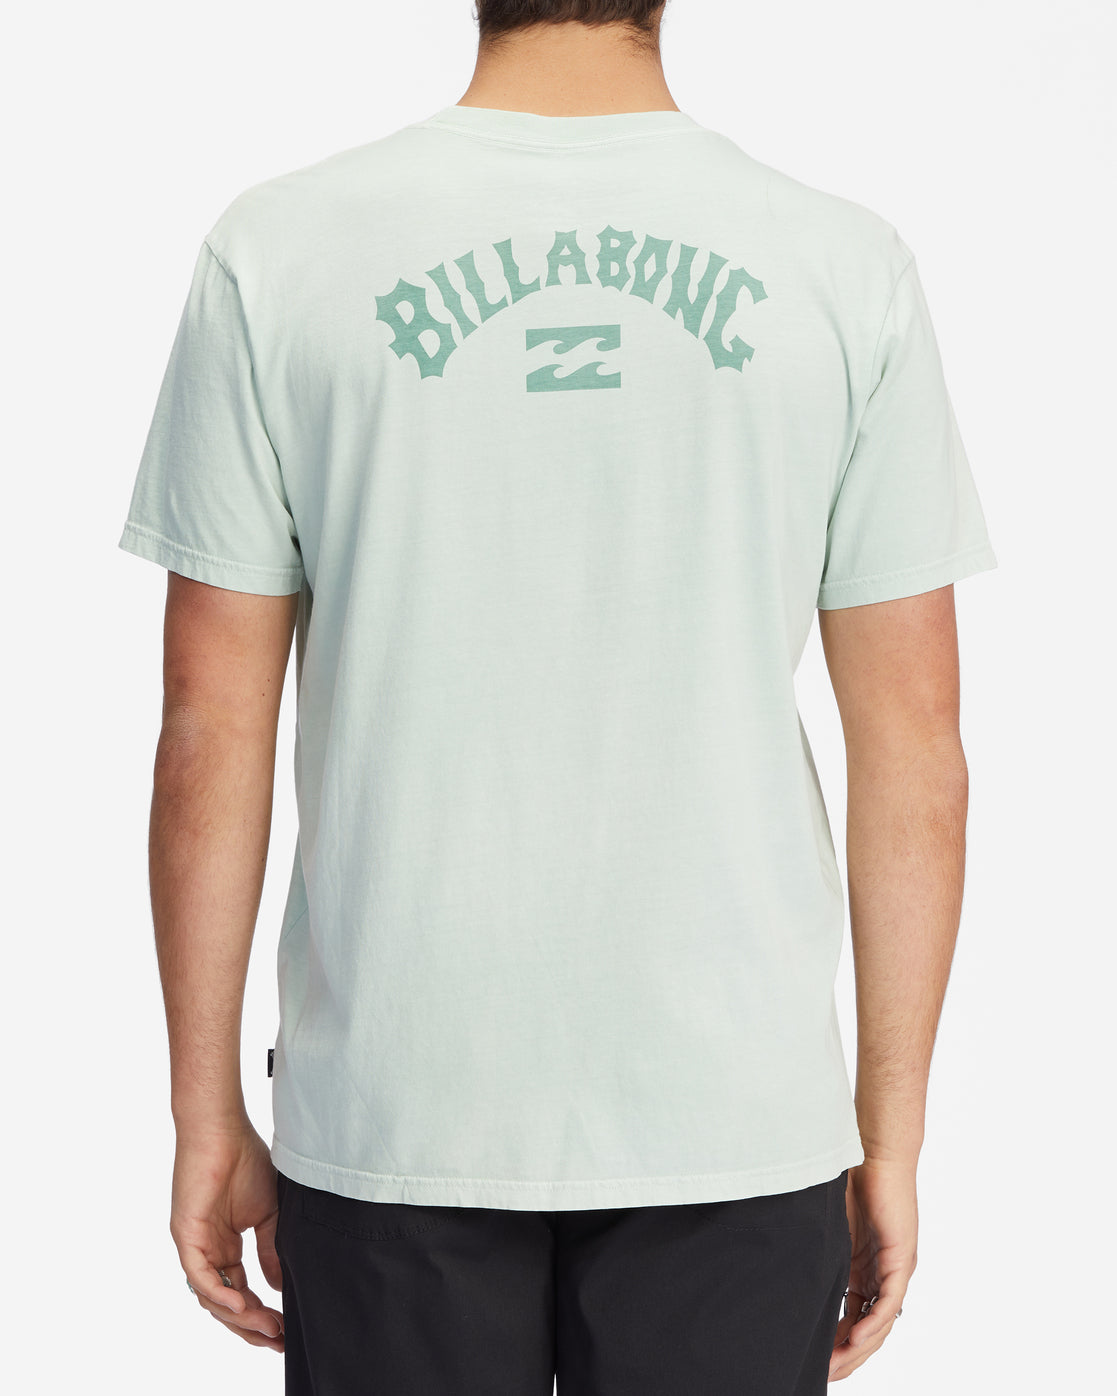 Billabong Arch Wave T-Shirt Seaglass